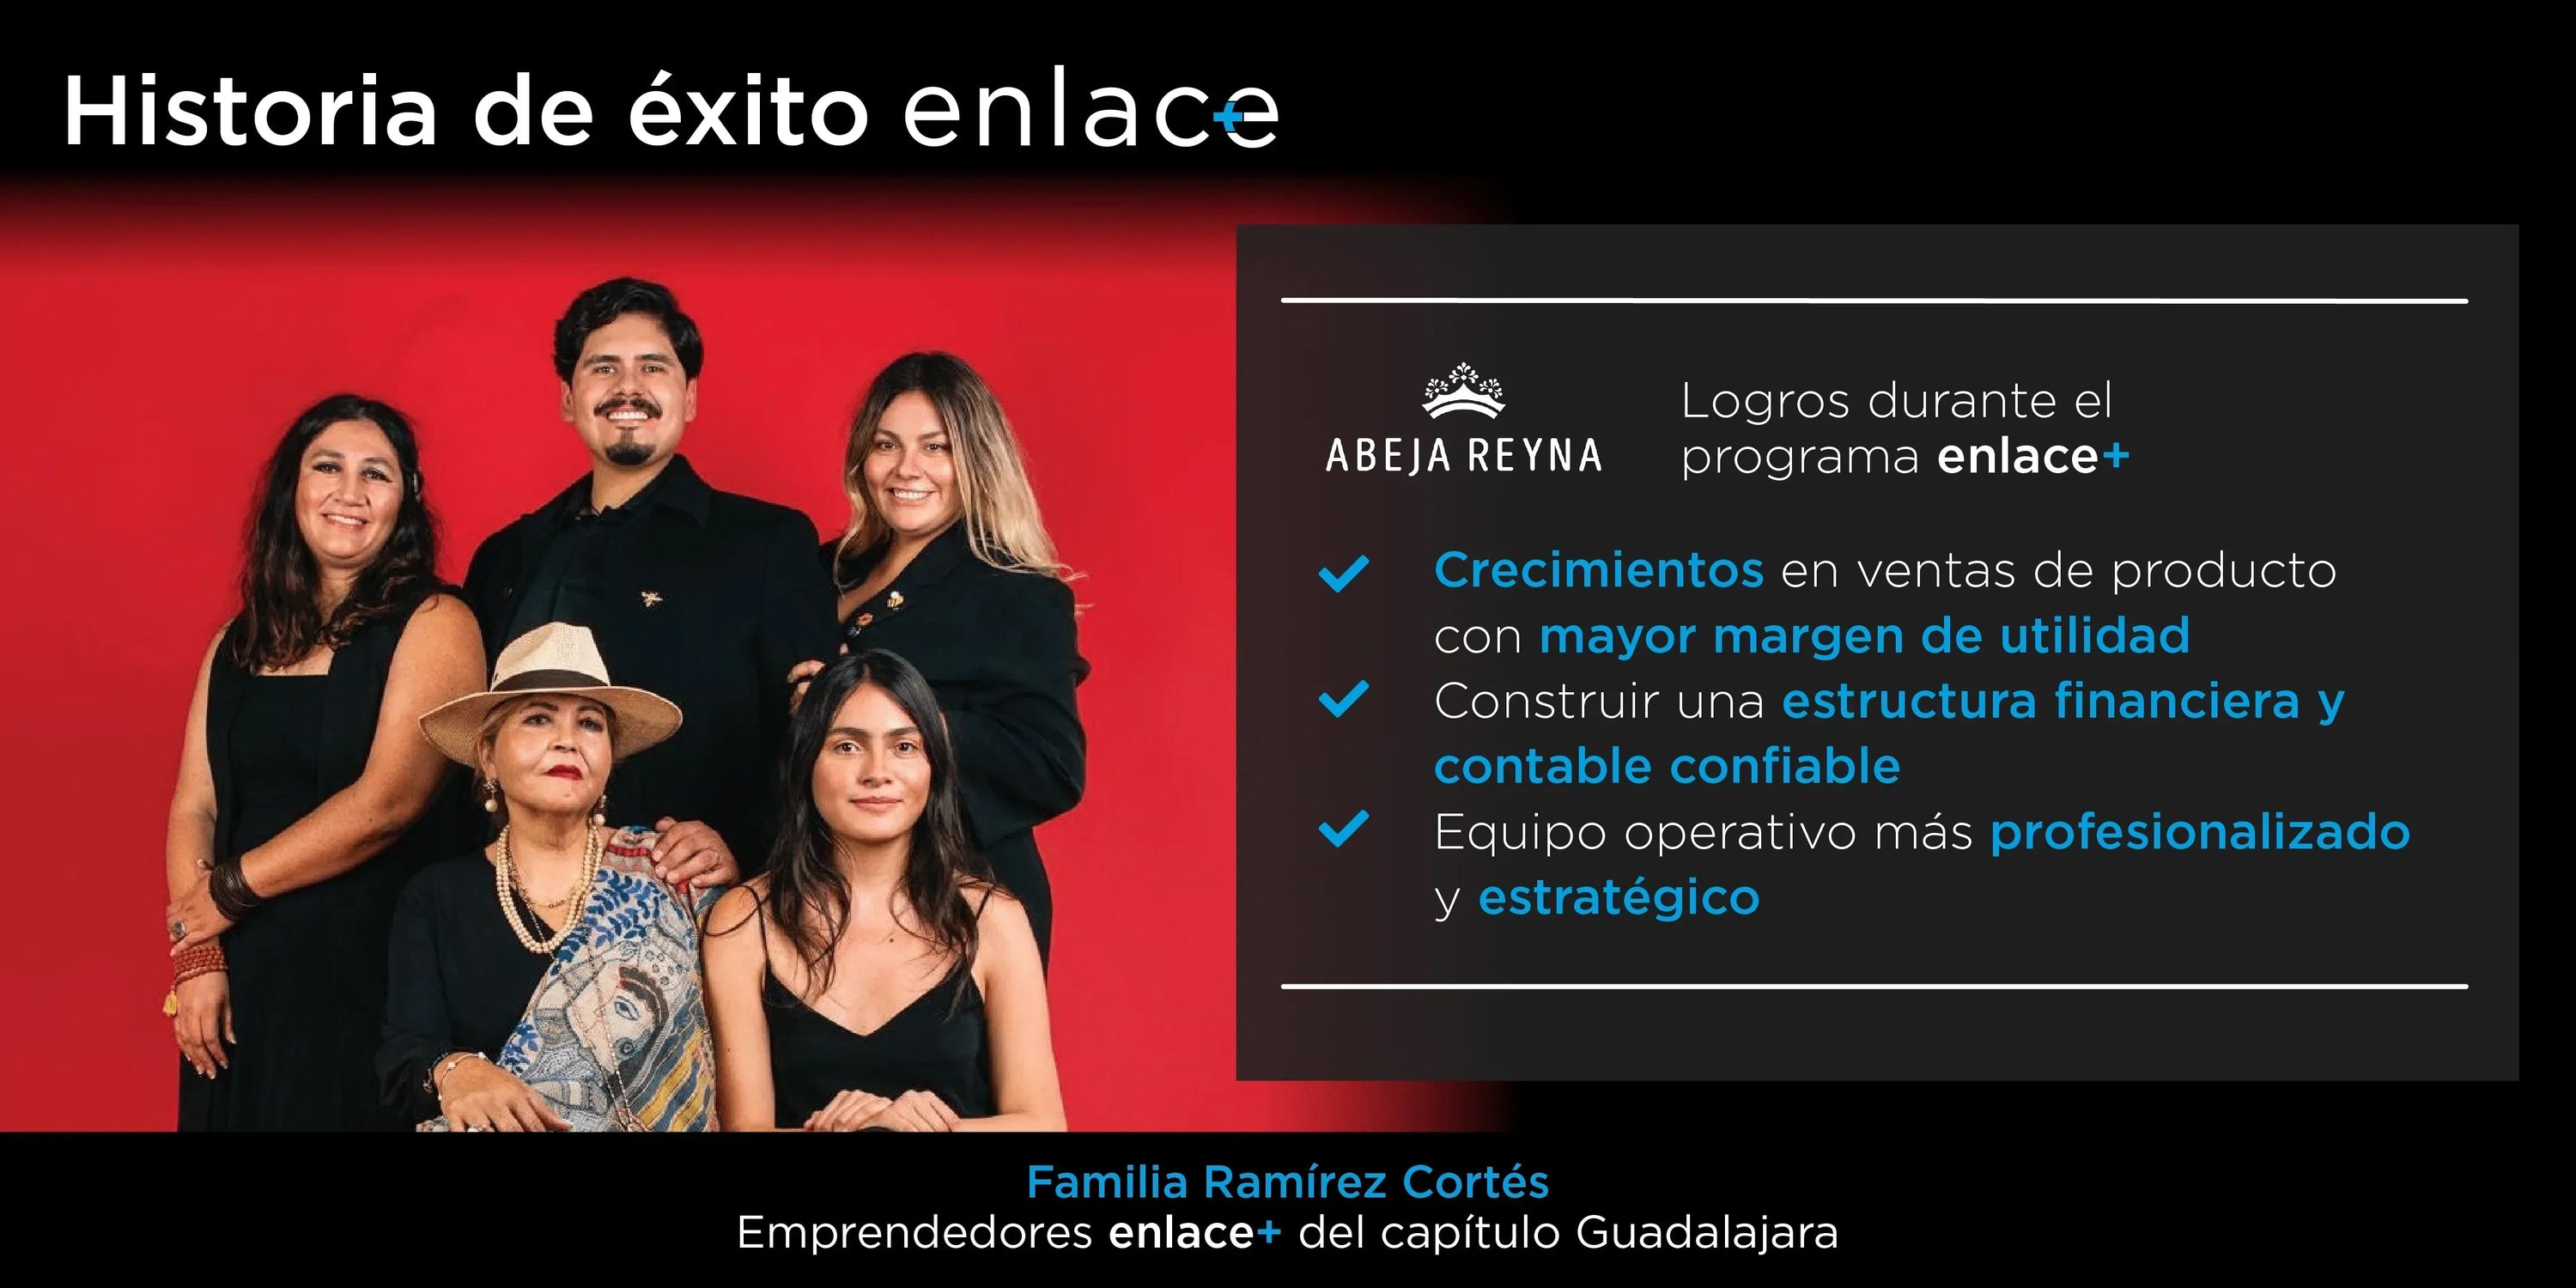 La familia Ramírez Cortés, los emprendedores que apuestan por la conservación apícola y la innovación sustentable por Enlace+ Abeja Reyna